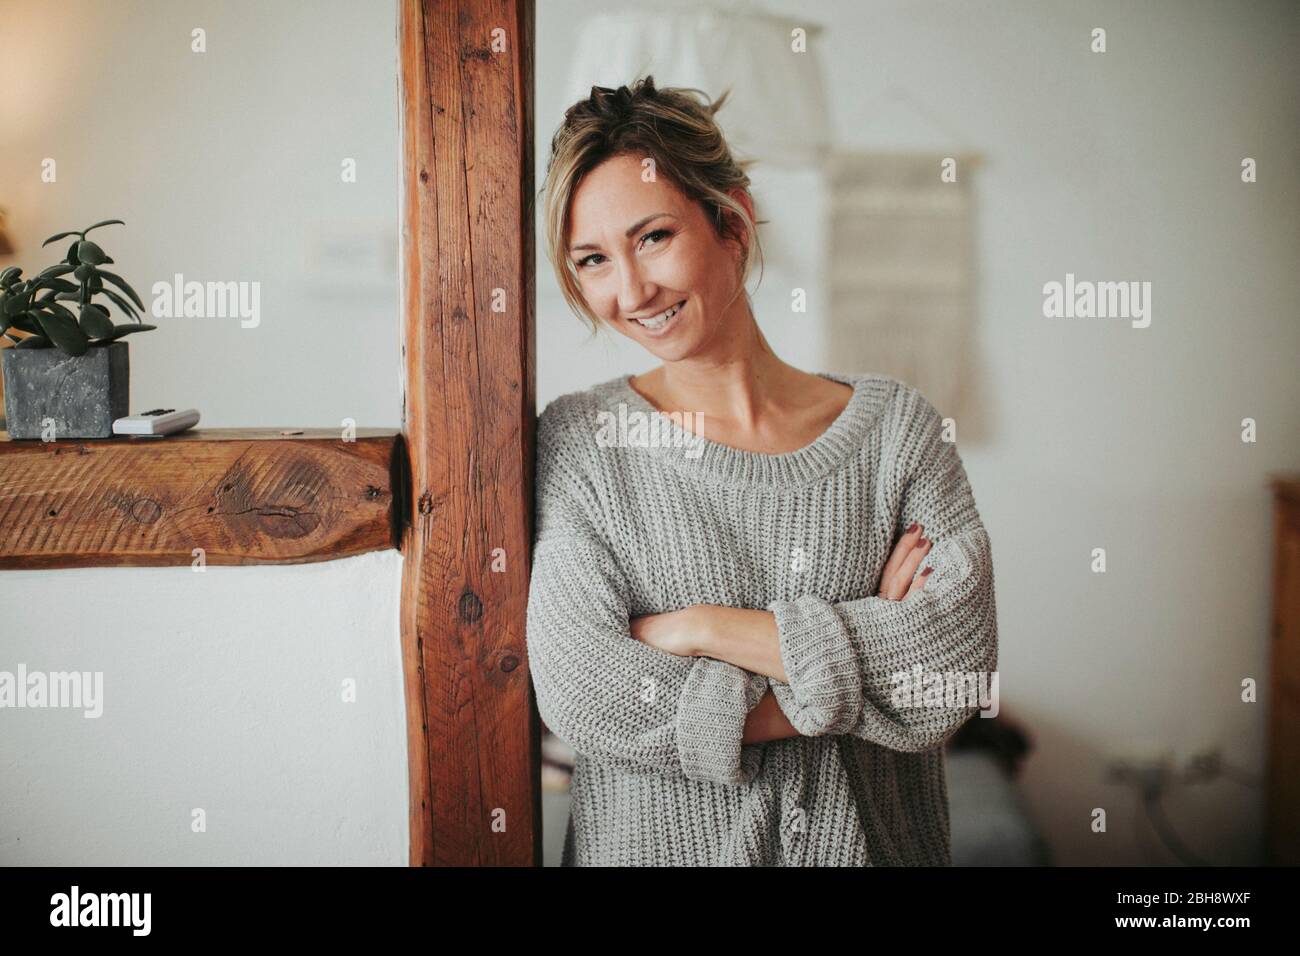 junge Frau in ihrer Wohnung, Arme verschränkt, lächeln, Halbporträt Stock Photo